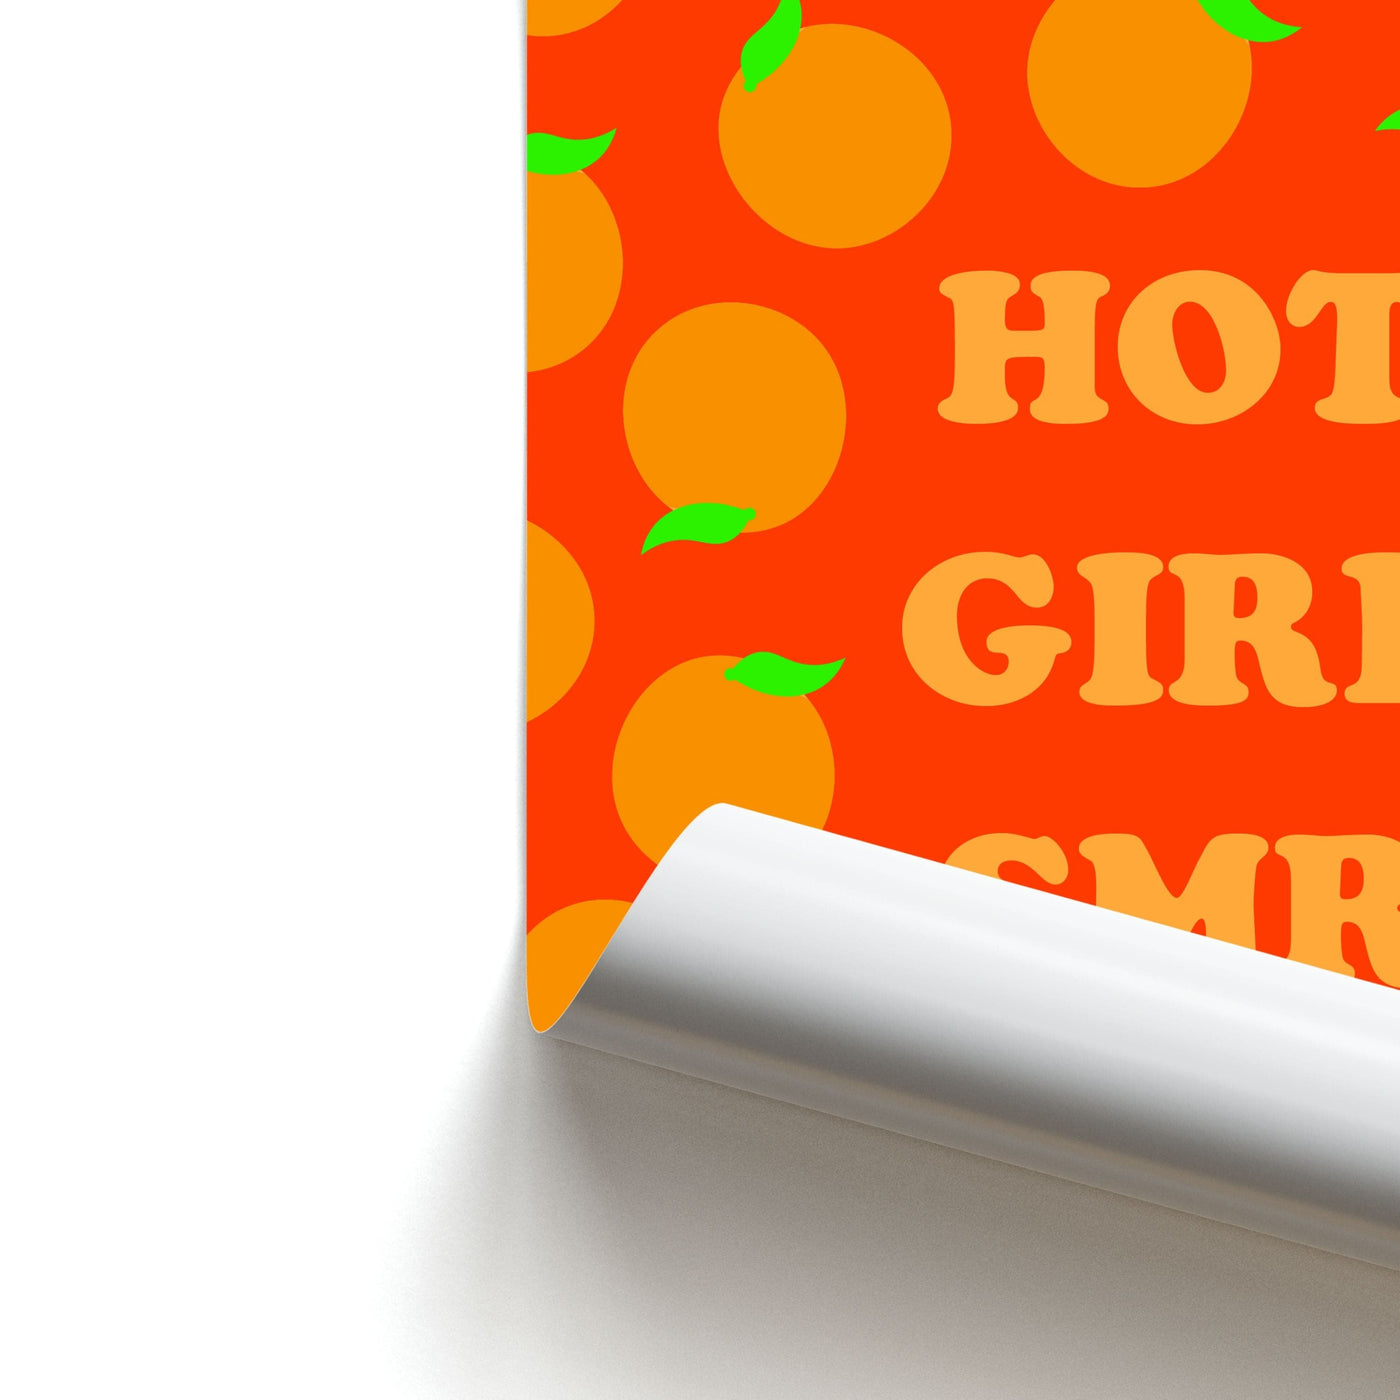 Hot Girl SMR - Summer Poster